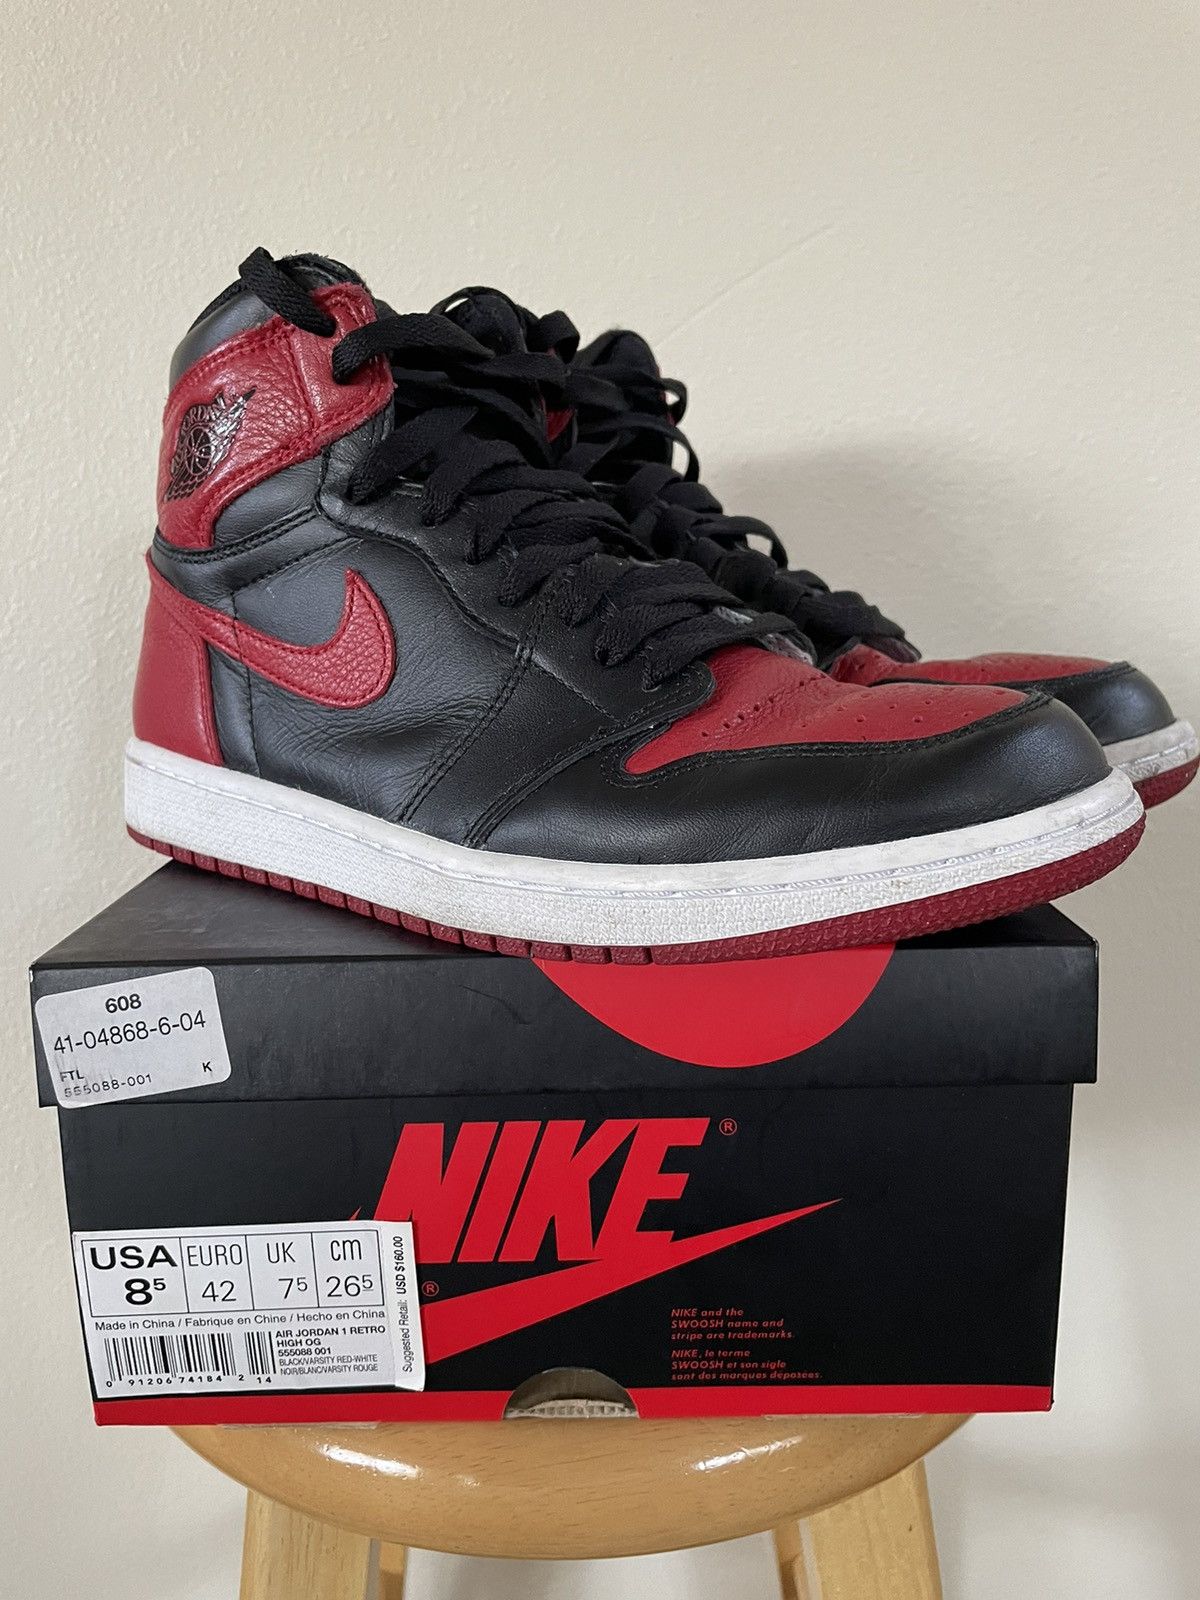 Pre-owned Jordan Nike Air Jordan 1 Bred 2016 Size 8.5 Shoes In Red